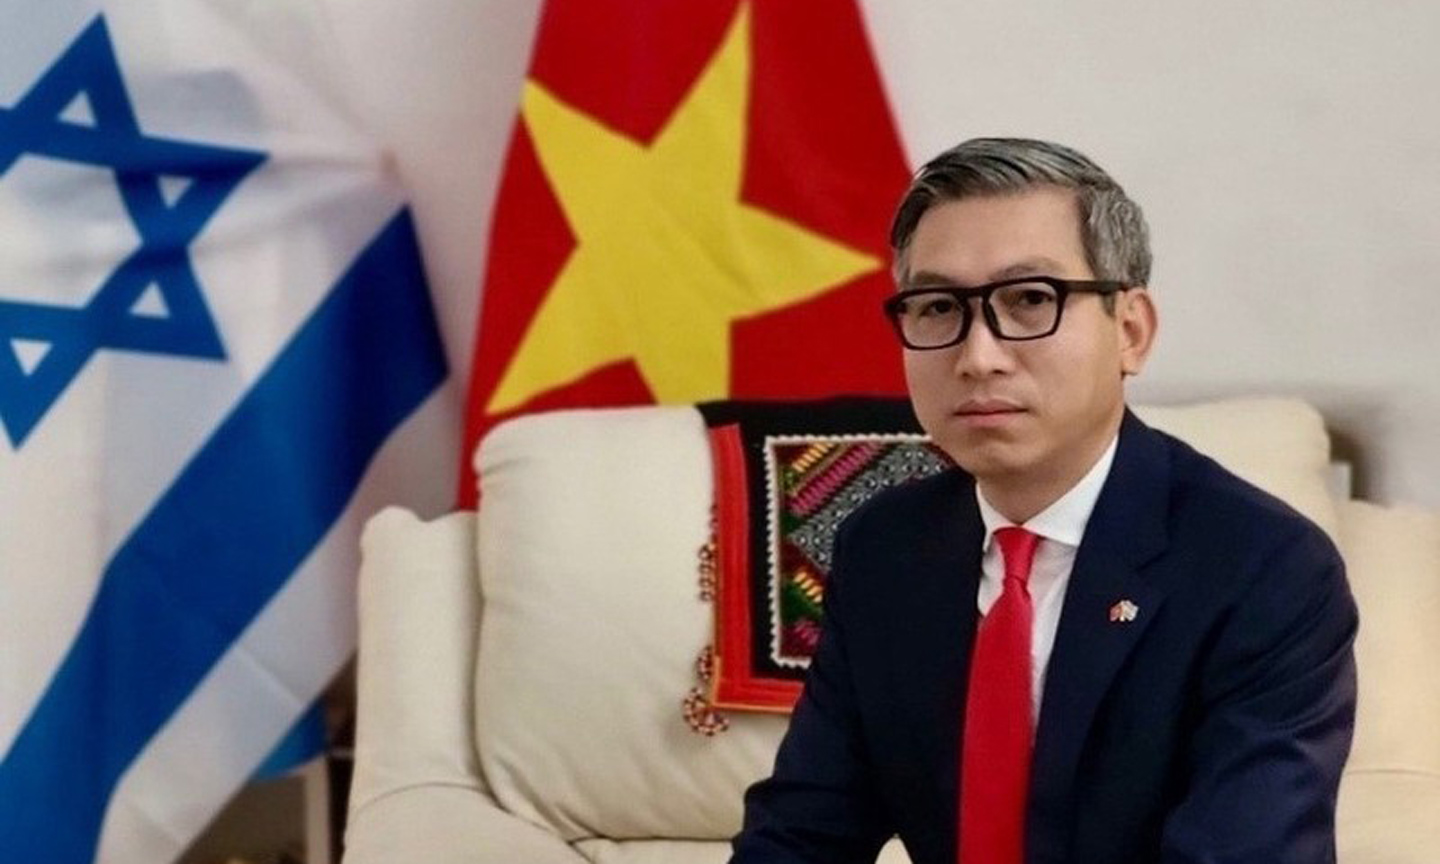 'Living Fully in Vietnam' held in Israel to mark diplomatic ties